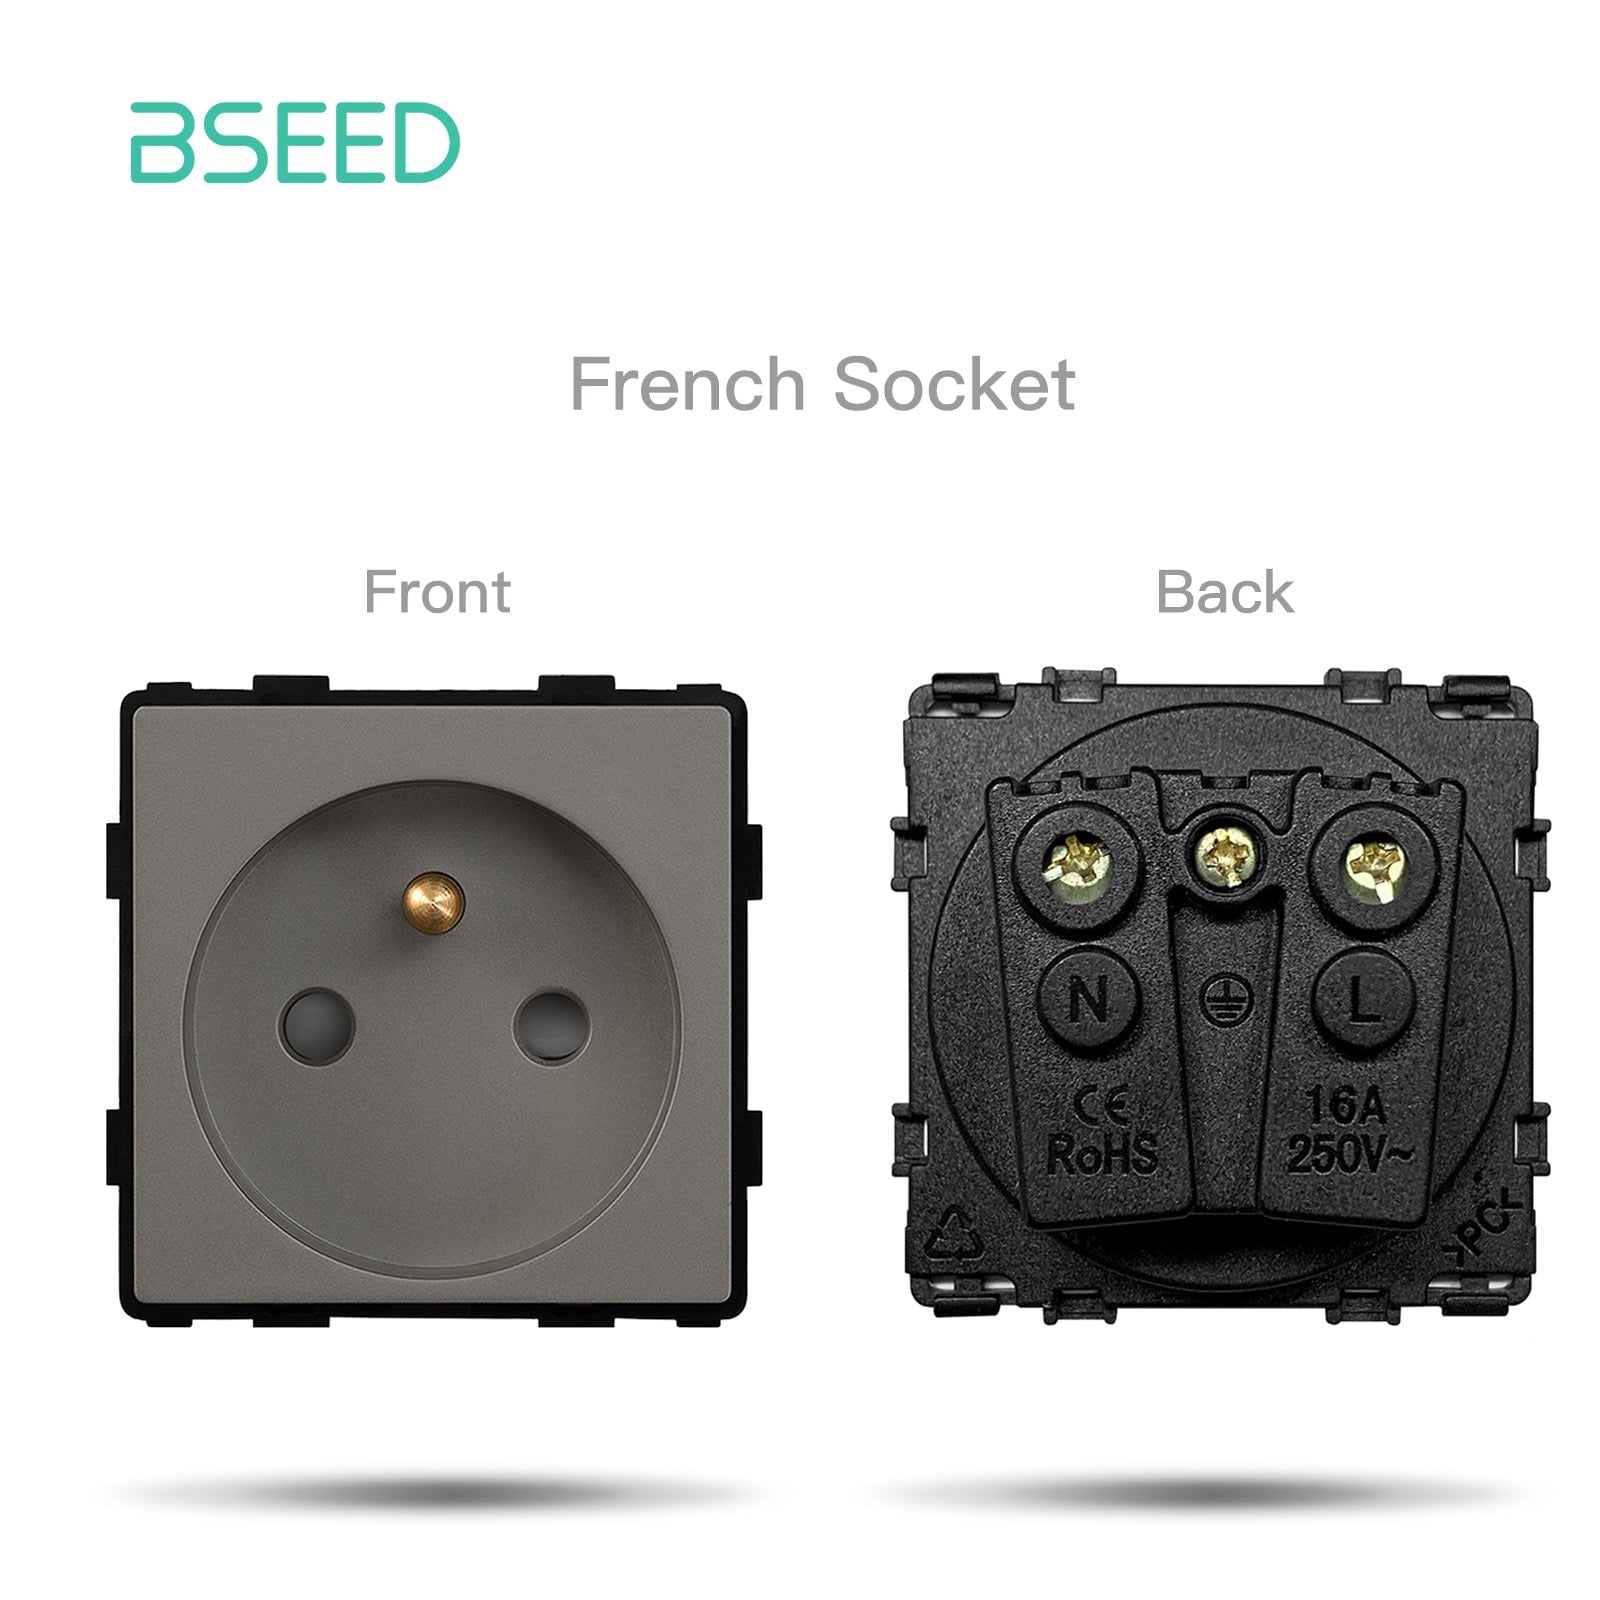 BSEED EU/FR/ UK/MF Standard Wall Socket Function Key Touch WiFi Zigbee type Power Outlets & Sockets Bseedswitch Grey FR Touch